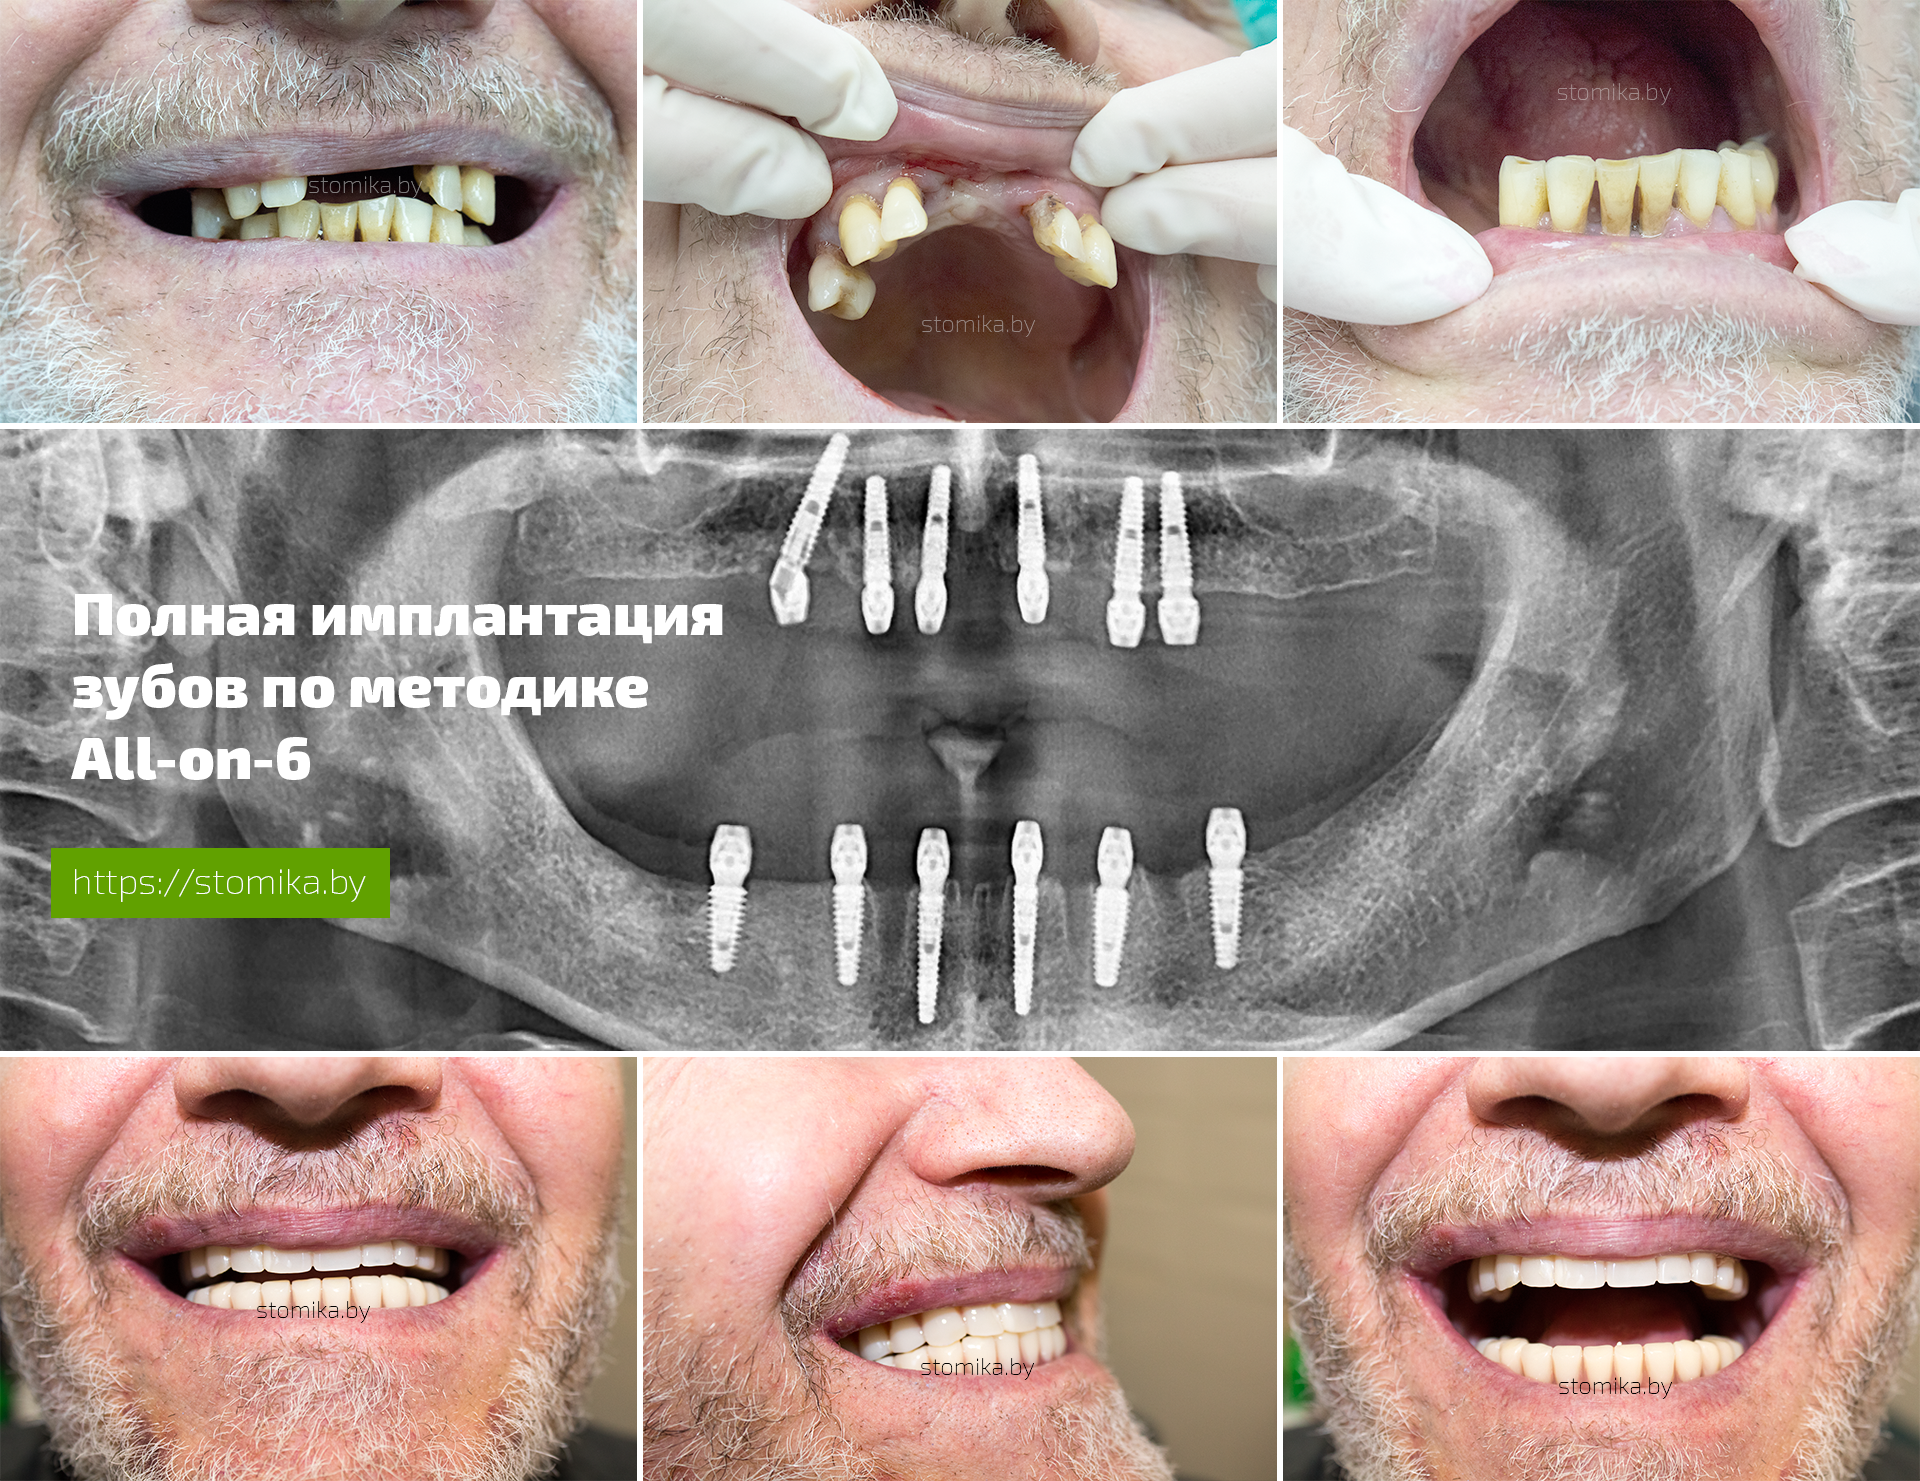 Диета Перед Имплантацией Зубов